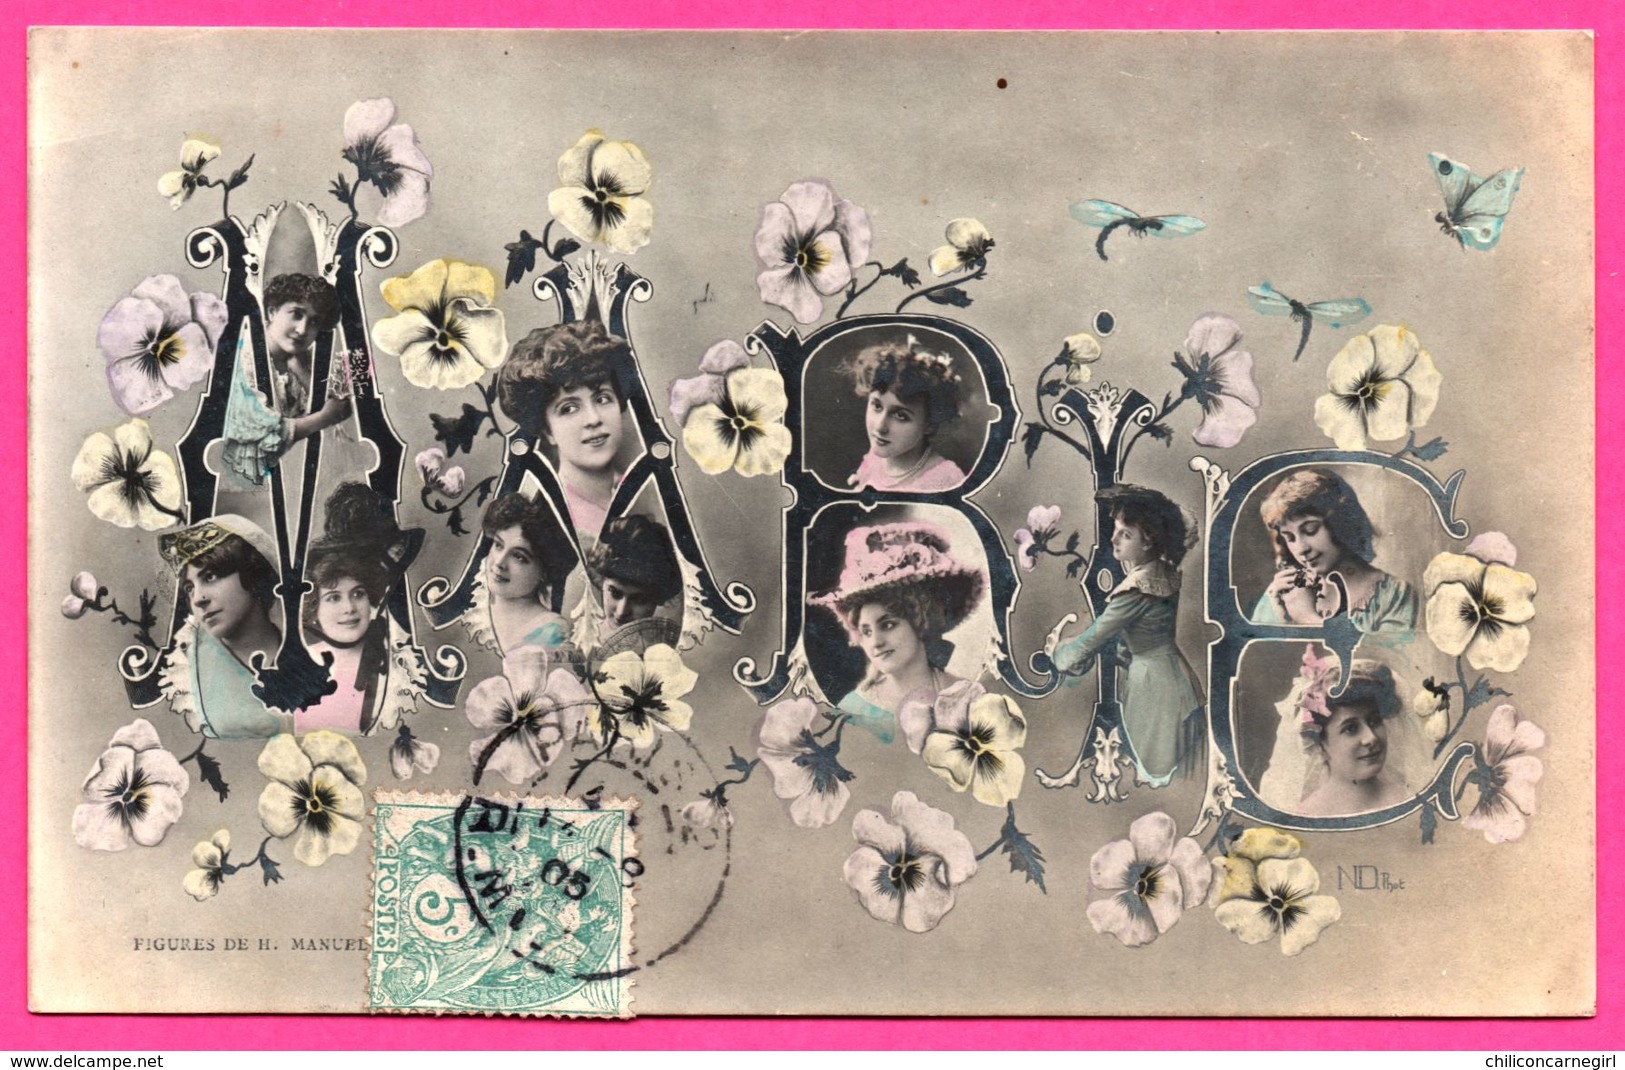 Marie - Femme - Portraits De Femmes Dans Les Lettres Du Prénom - Fleurs - Montage - Figures De H. MANUEL - 1905 - Prénoms